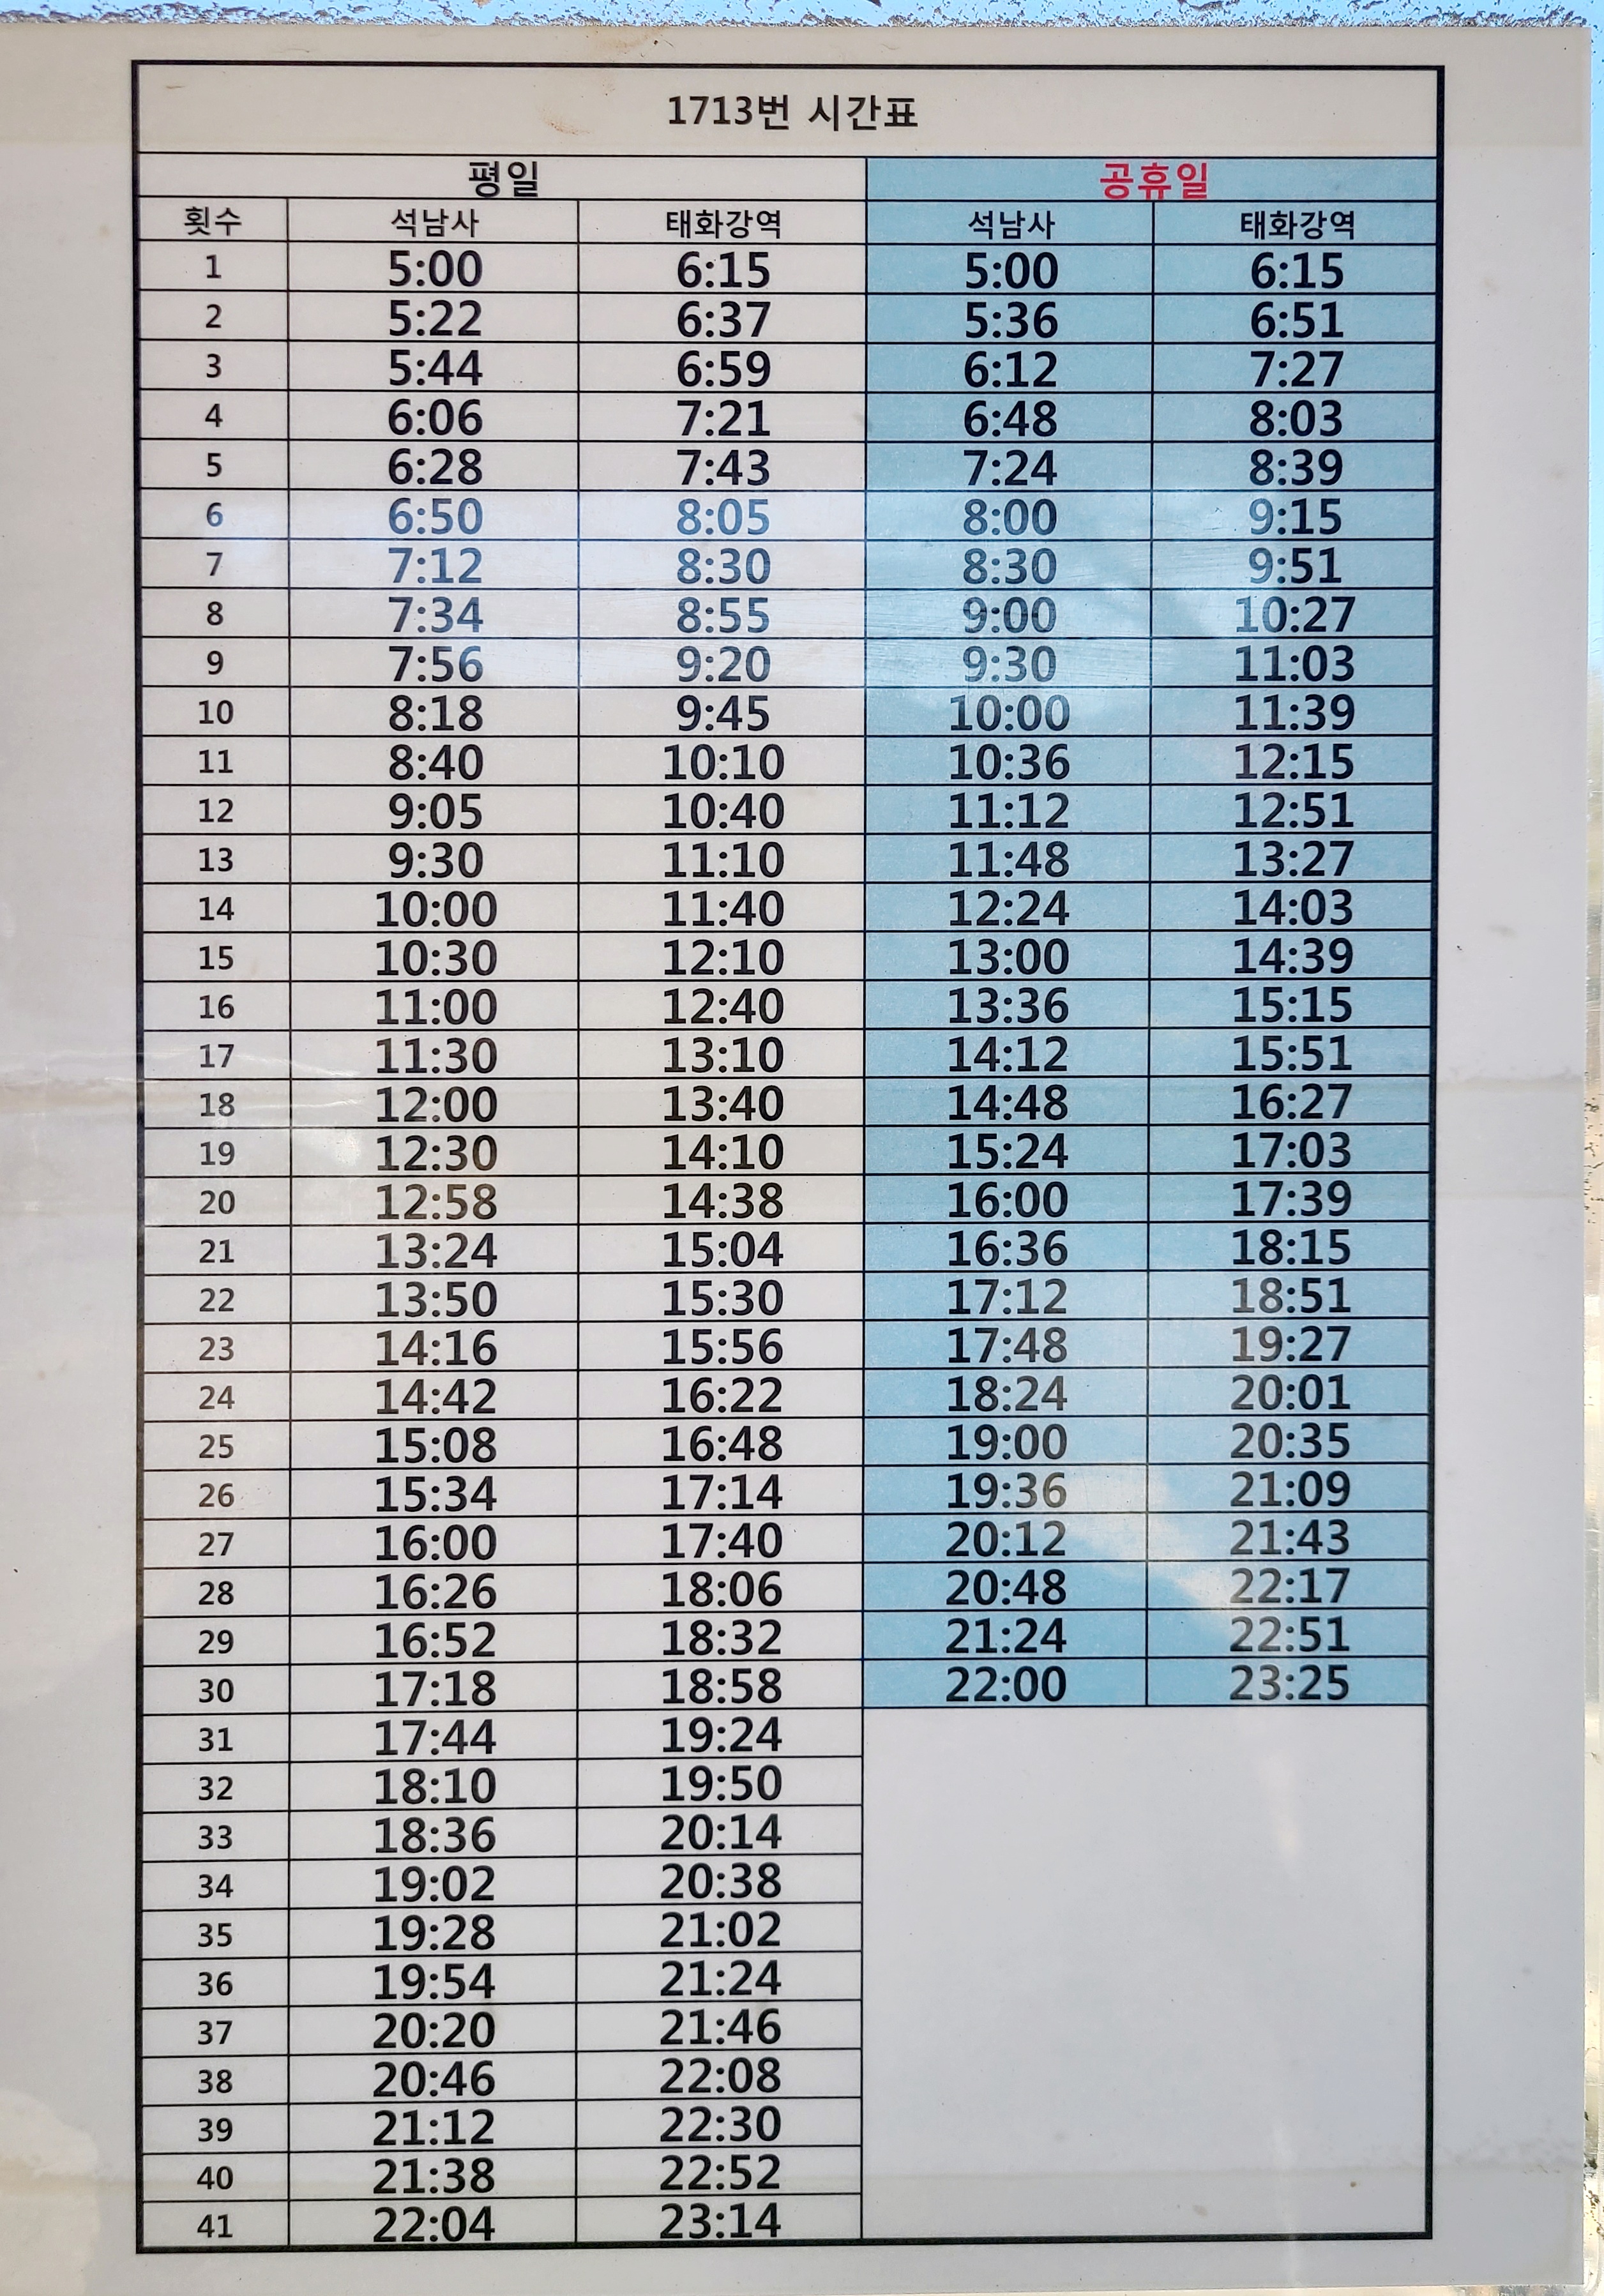 태화강역-석남사를 오가는 1713번 버스 시간표